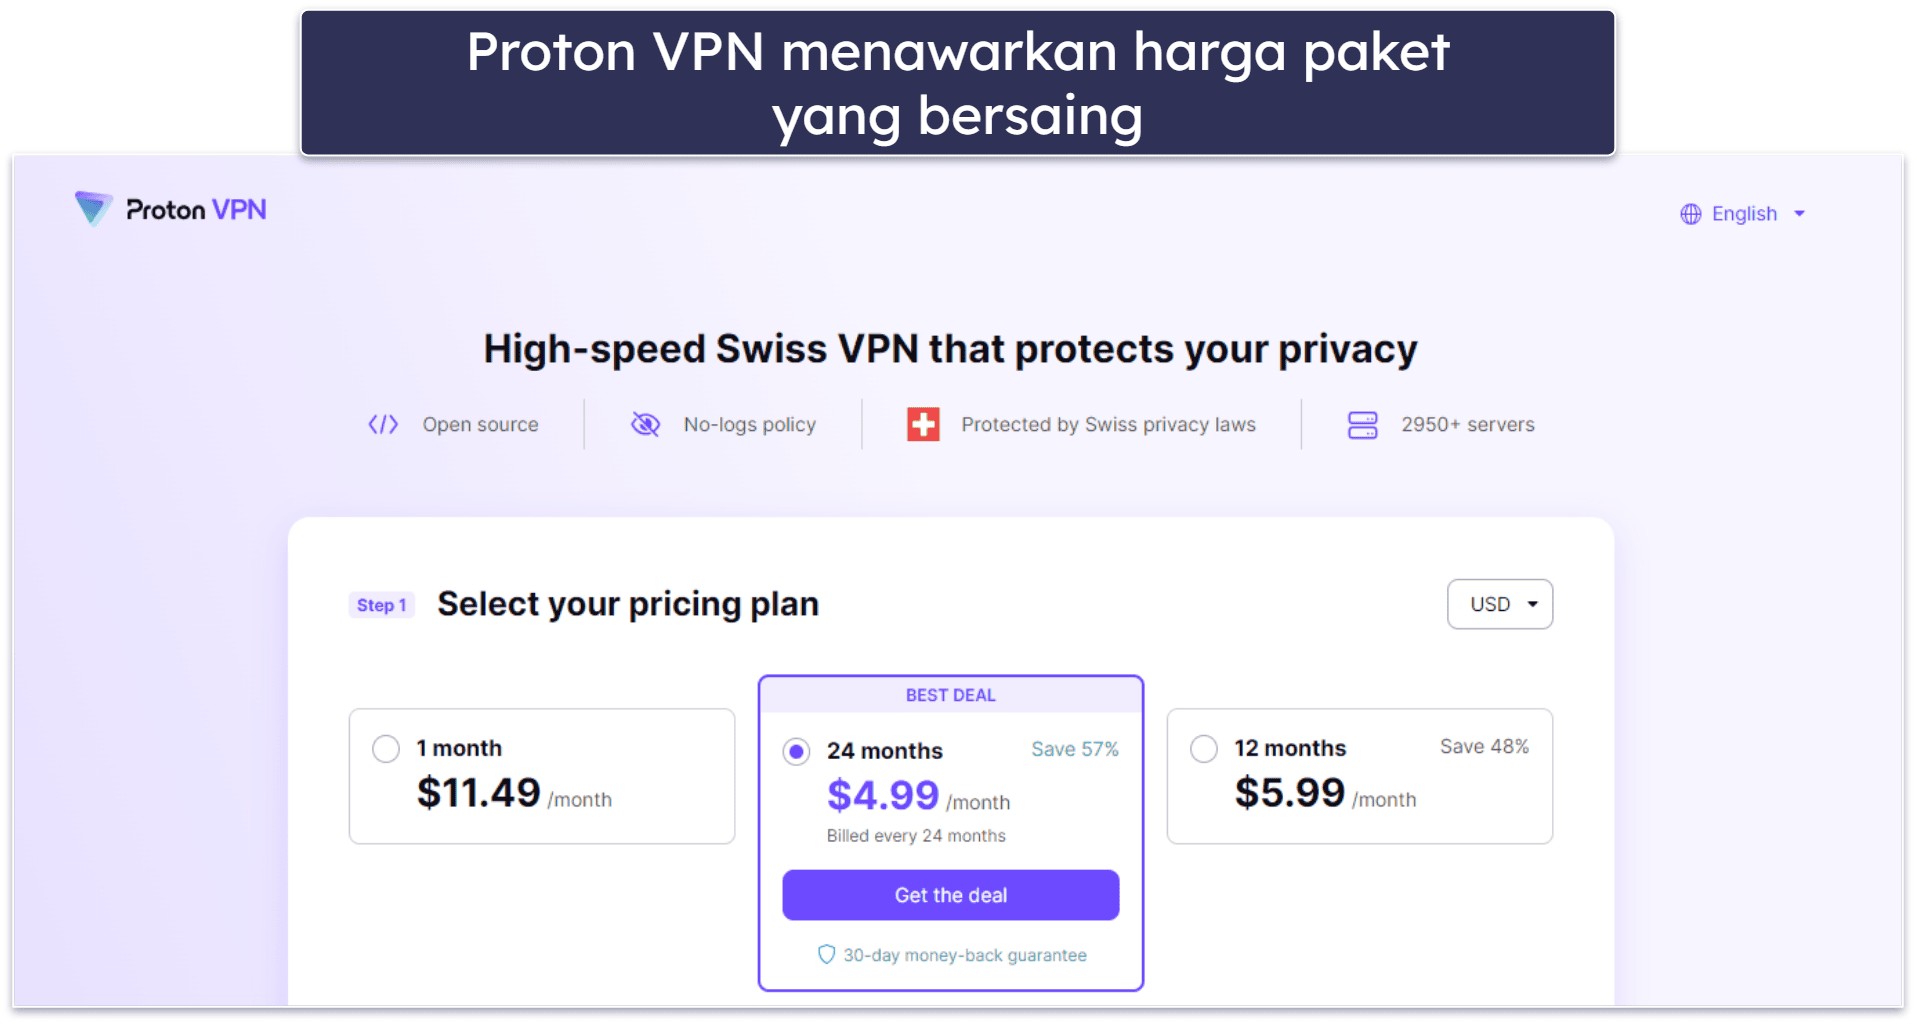 7. Proton VPN: Fitur Keamanan dan Privasi Kelas Atas